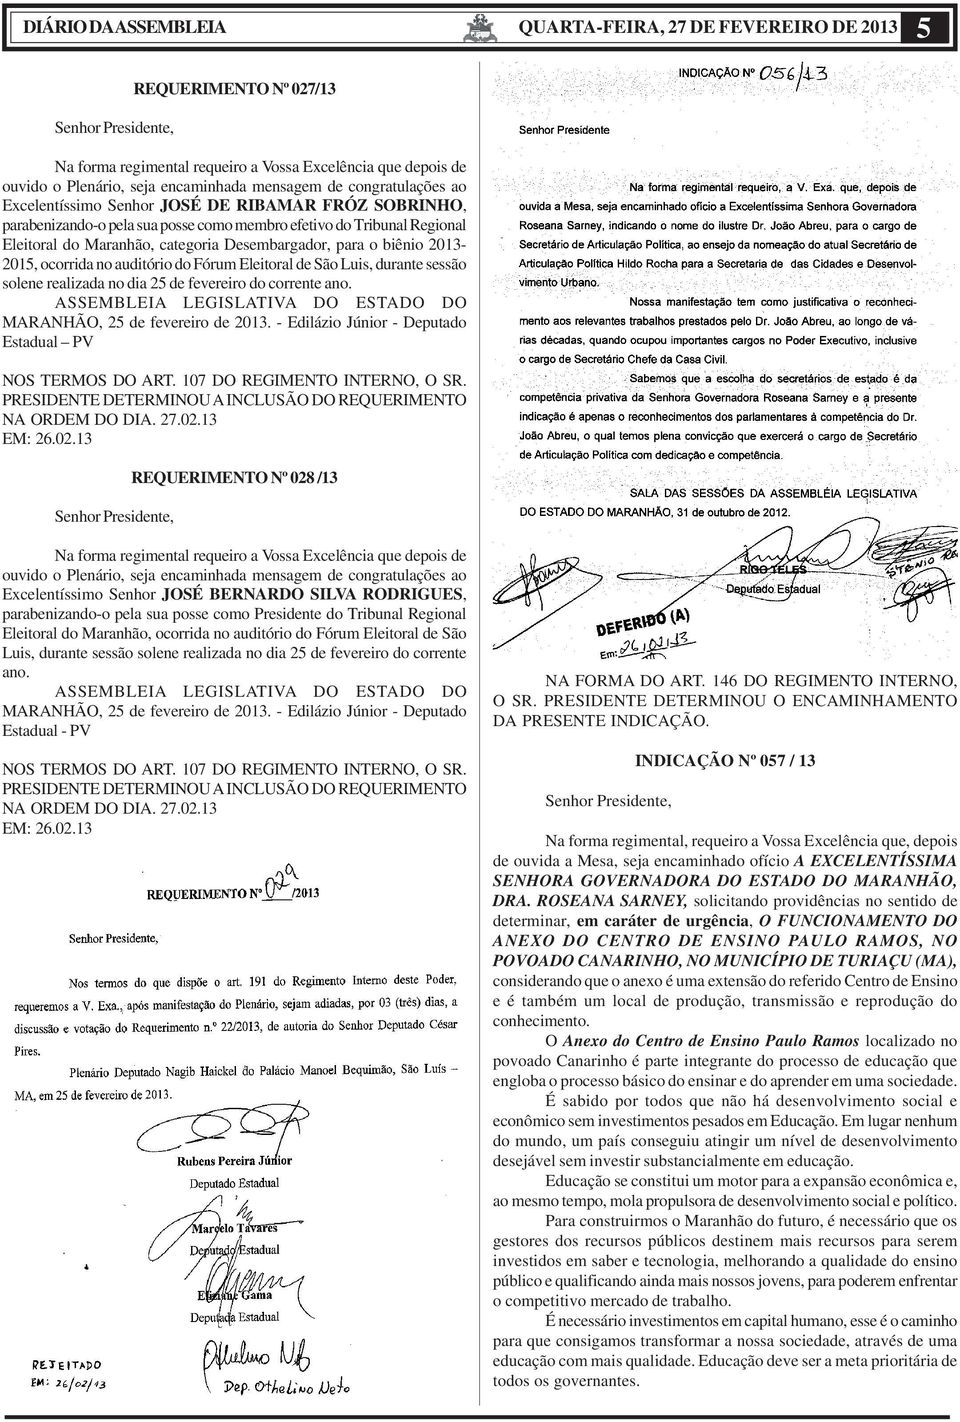 biênio 2013-2015, ocorrida no auditório do Fórum Eleitoral de São Luis, durante sessão solene realizada no dia 25 de fevereiro do corrente ano.